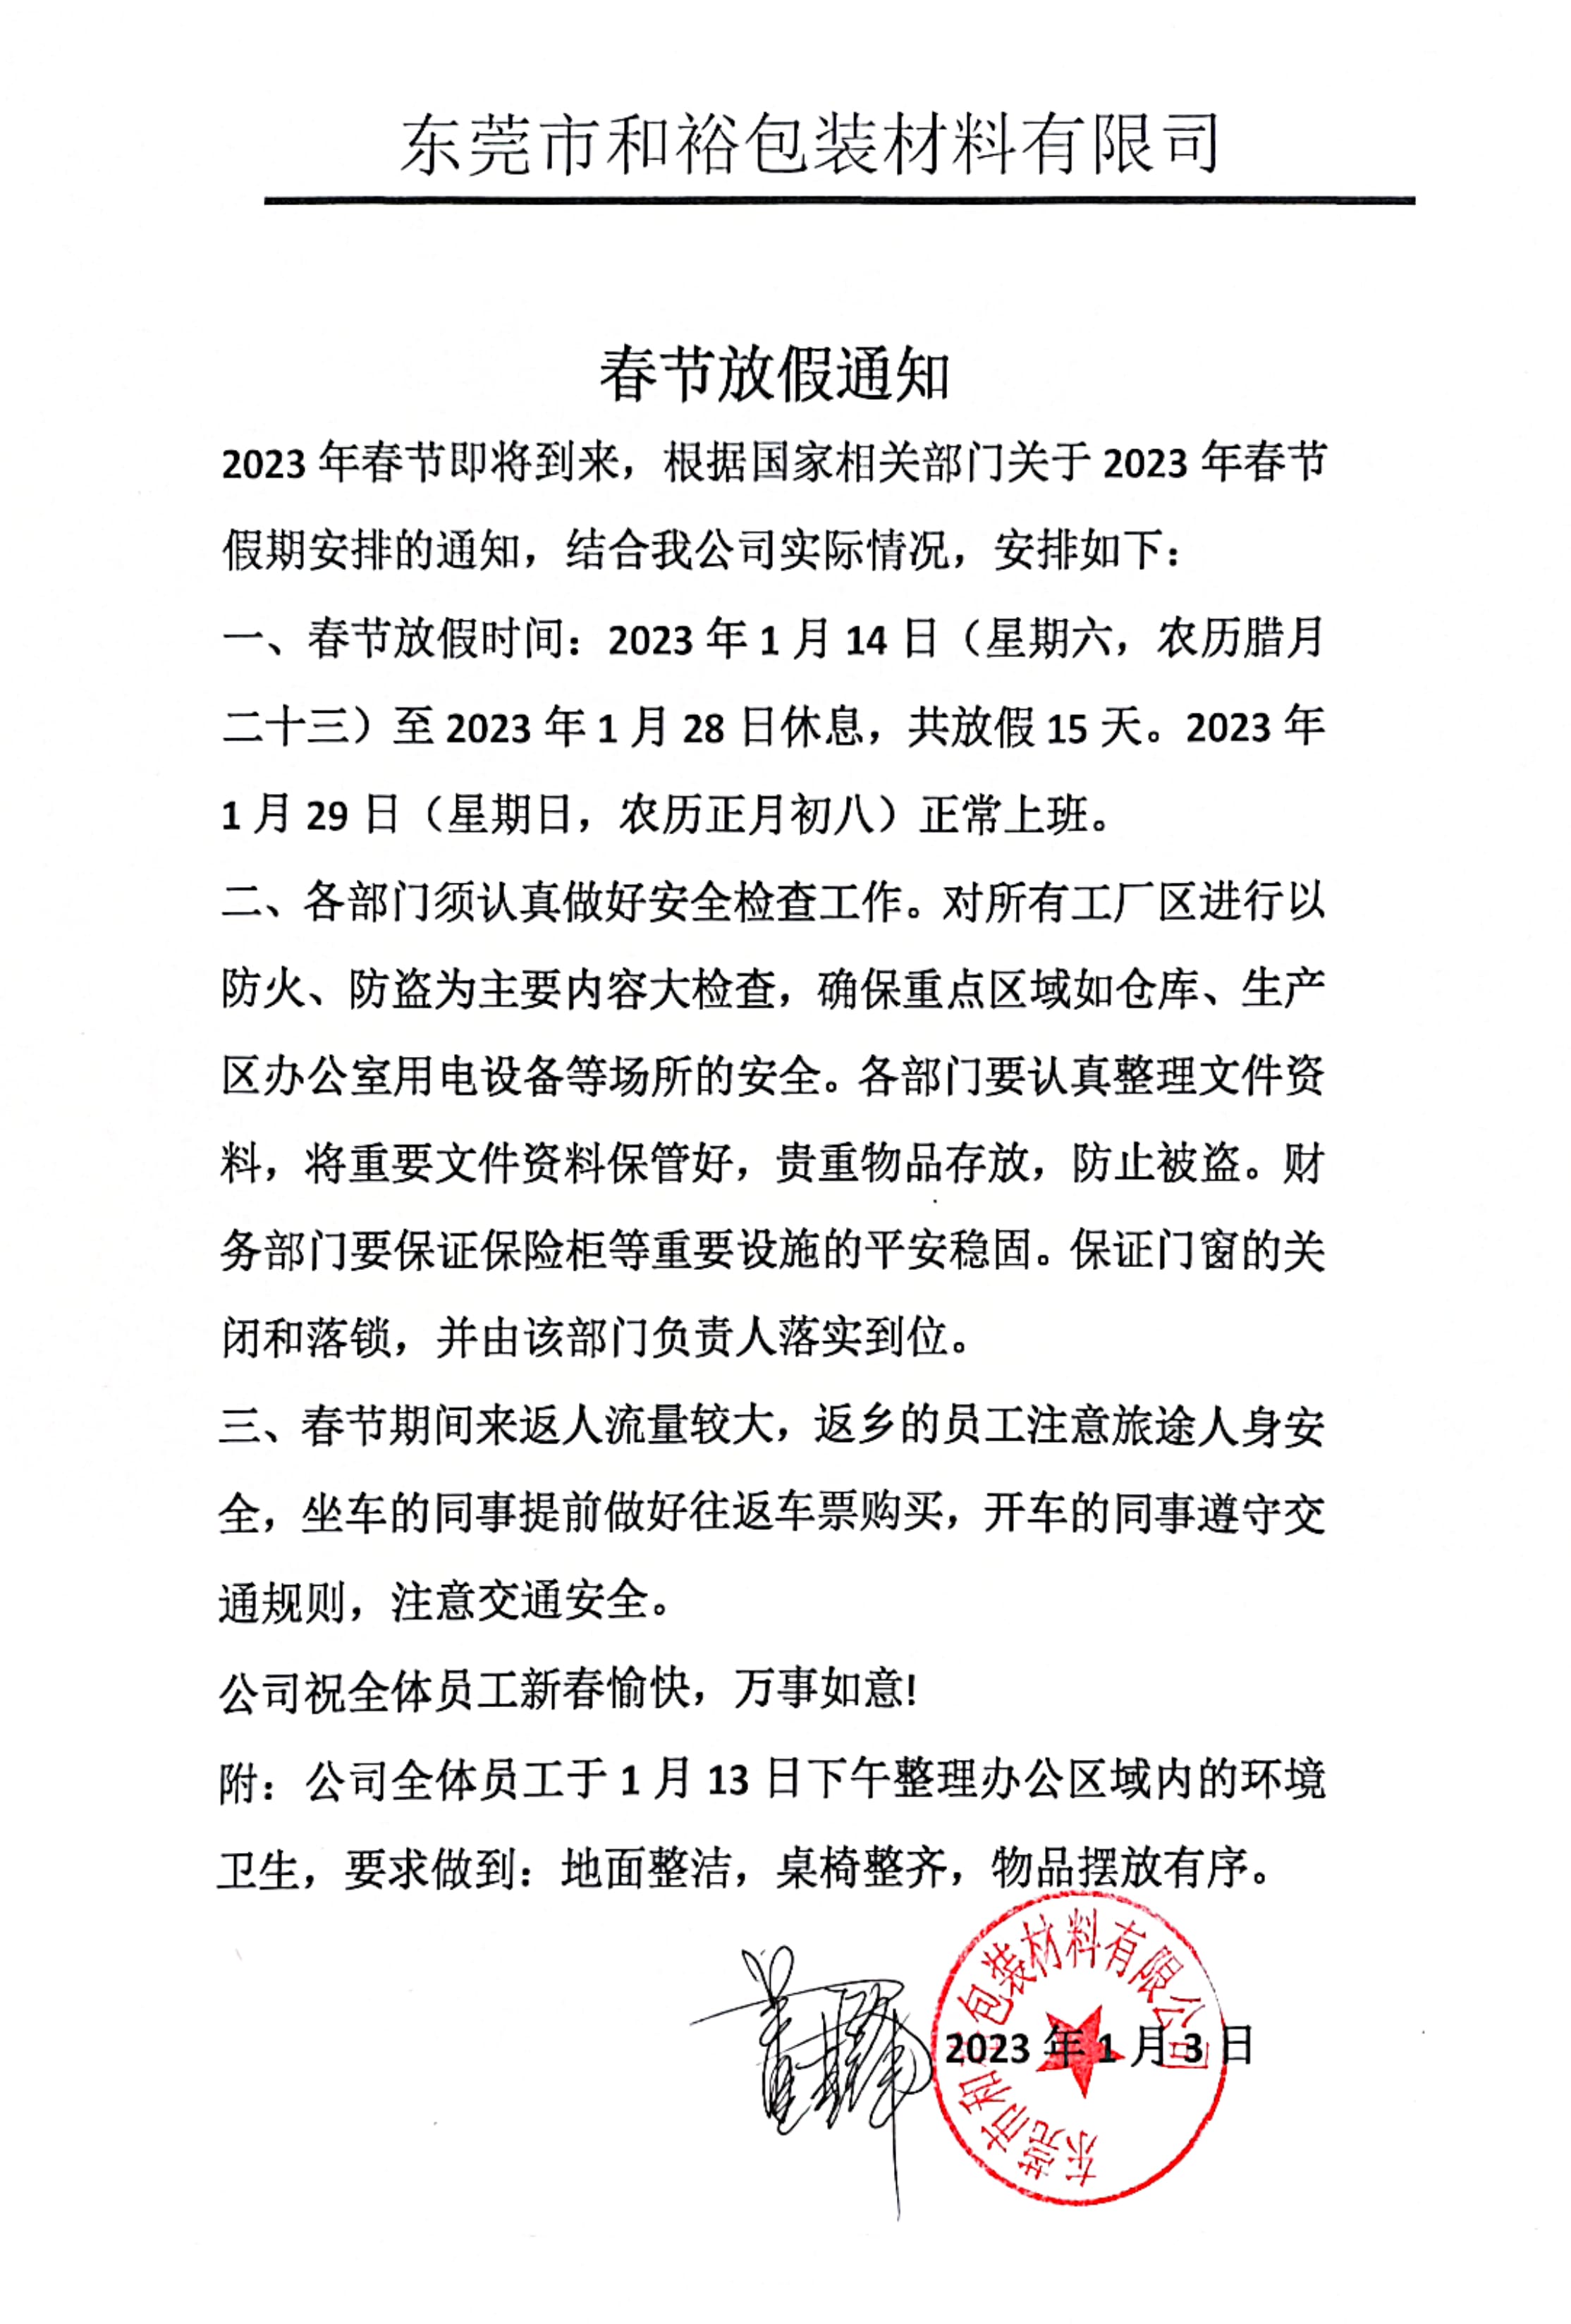 陵水黎族自治县2023年和裕包装春节放假通知